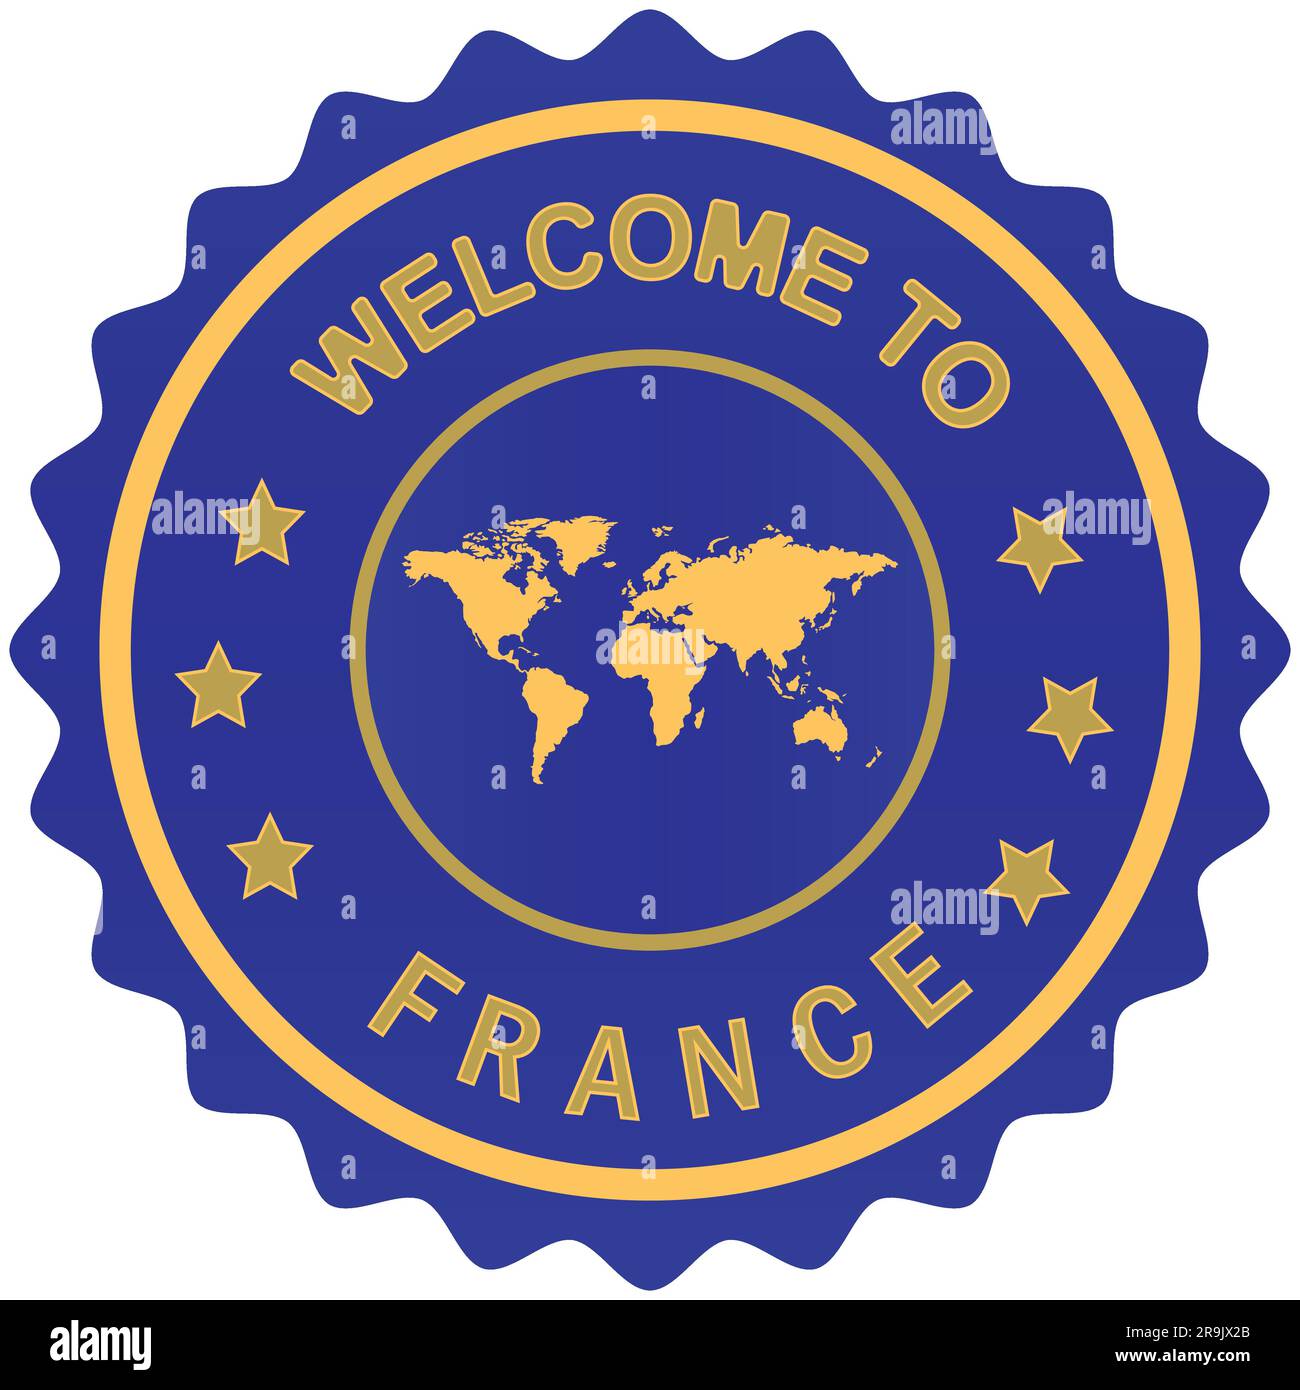 Willkommen zur französischen Design Vector Illustration mit Weltkarte und Rugby-Weltmeisterschaft Themenfarben Hintergrund Willkommensstempel Frankreich Gold Siegel Stock Vektor